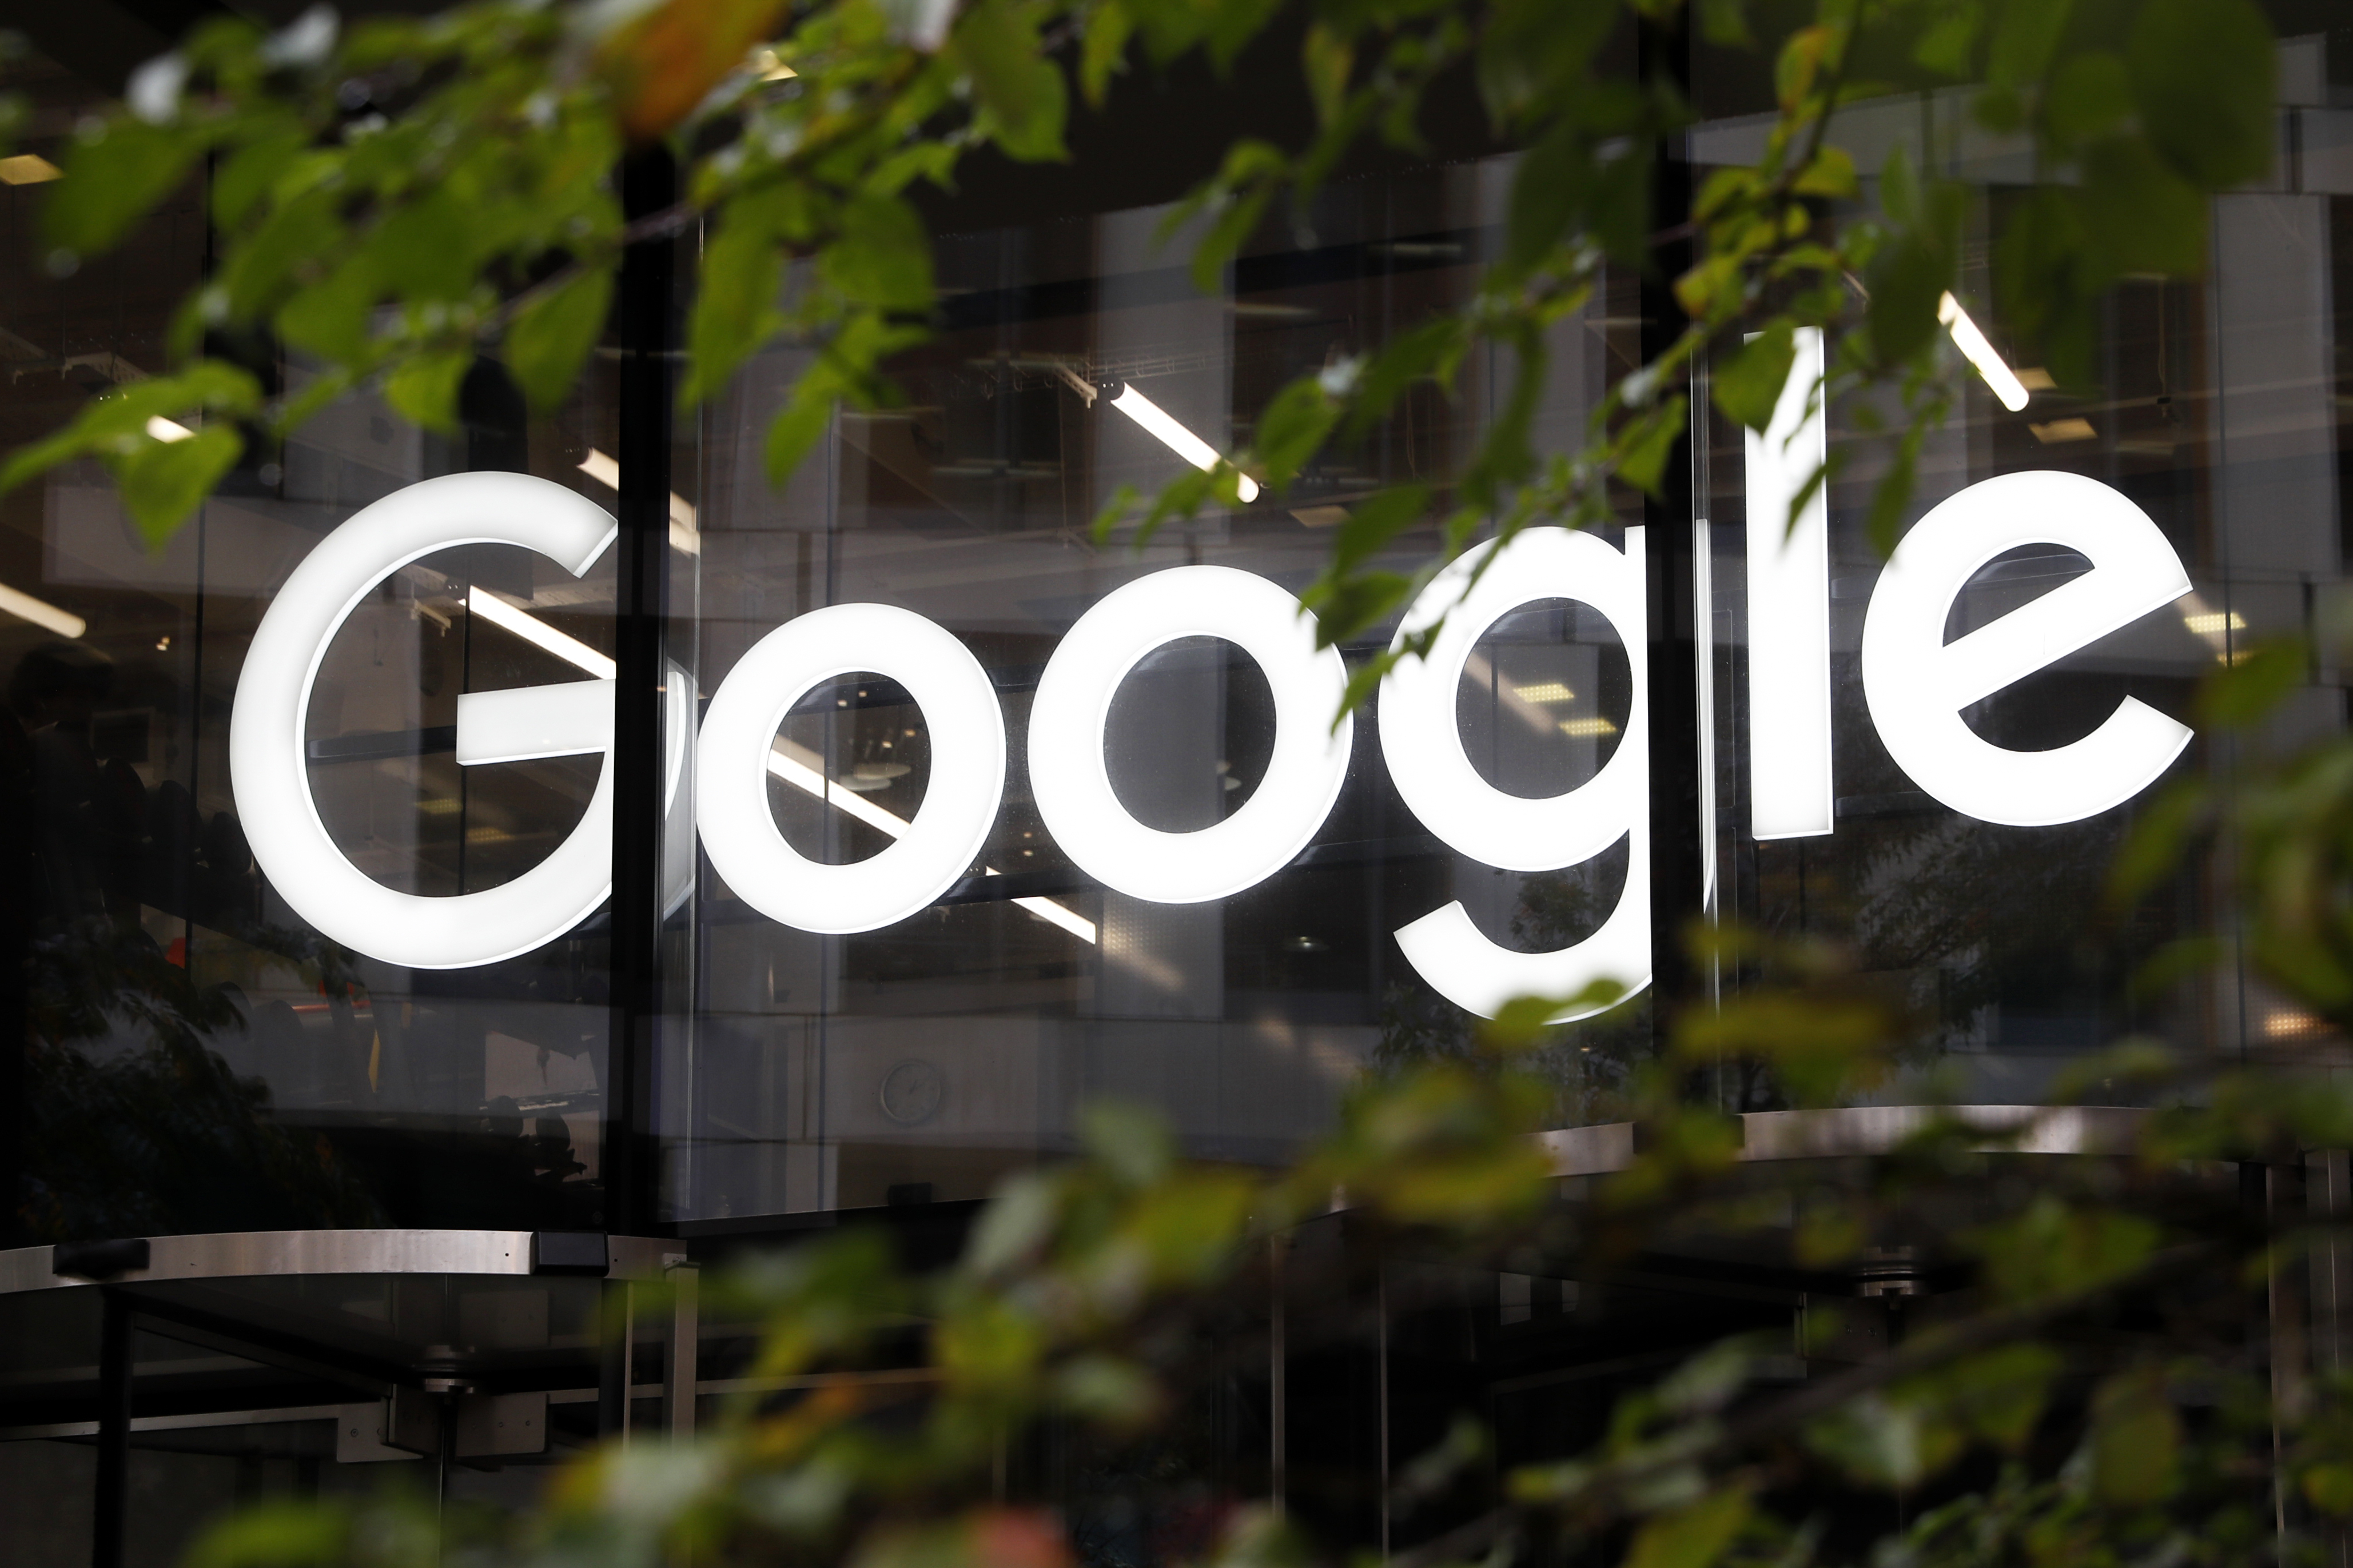 Google to invest $350 million in Iowa data center